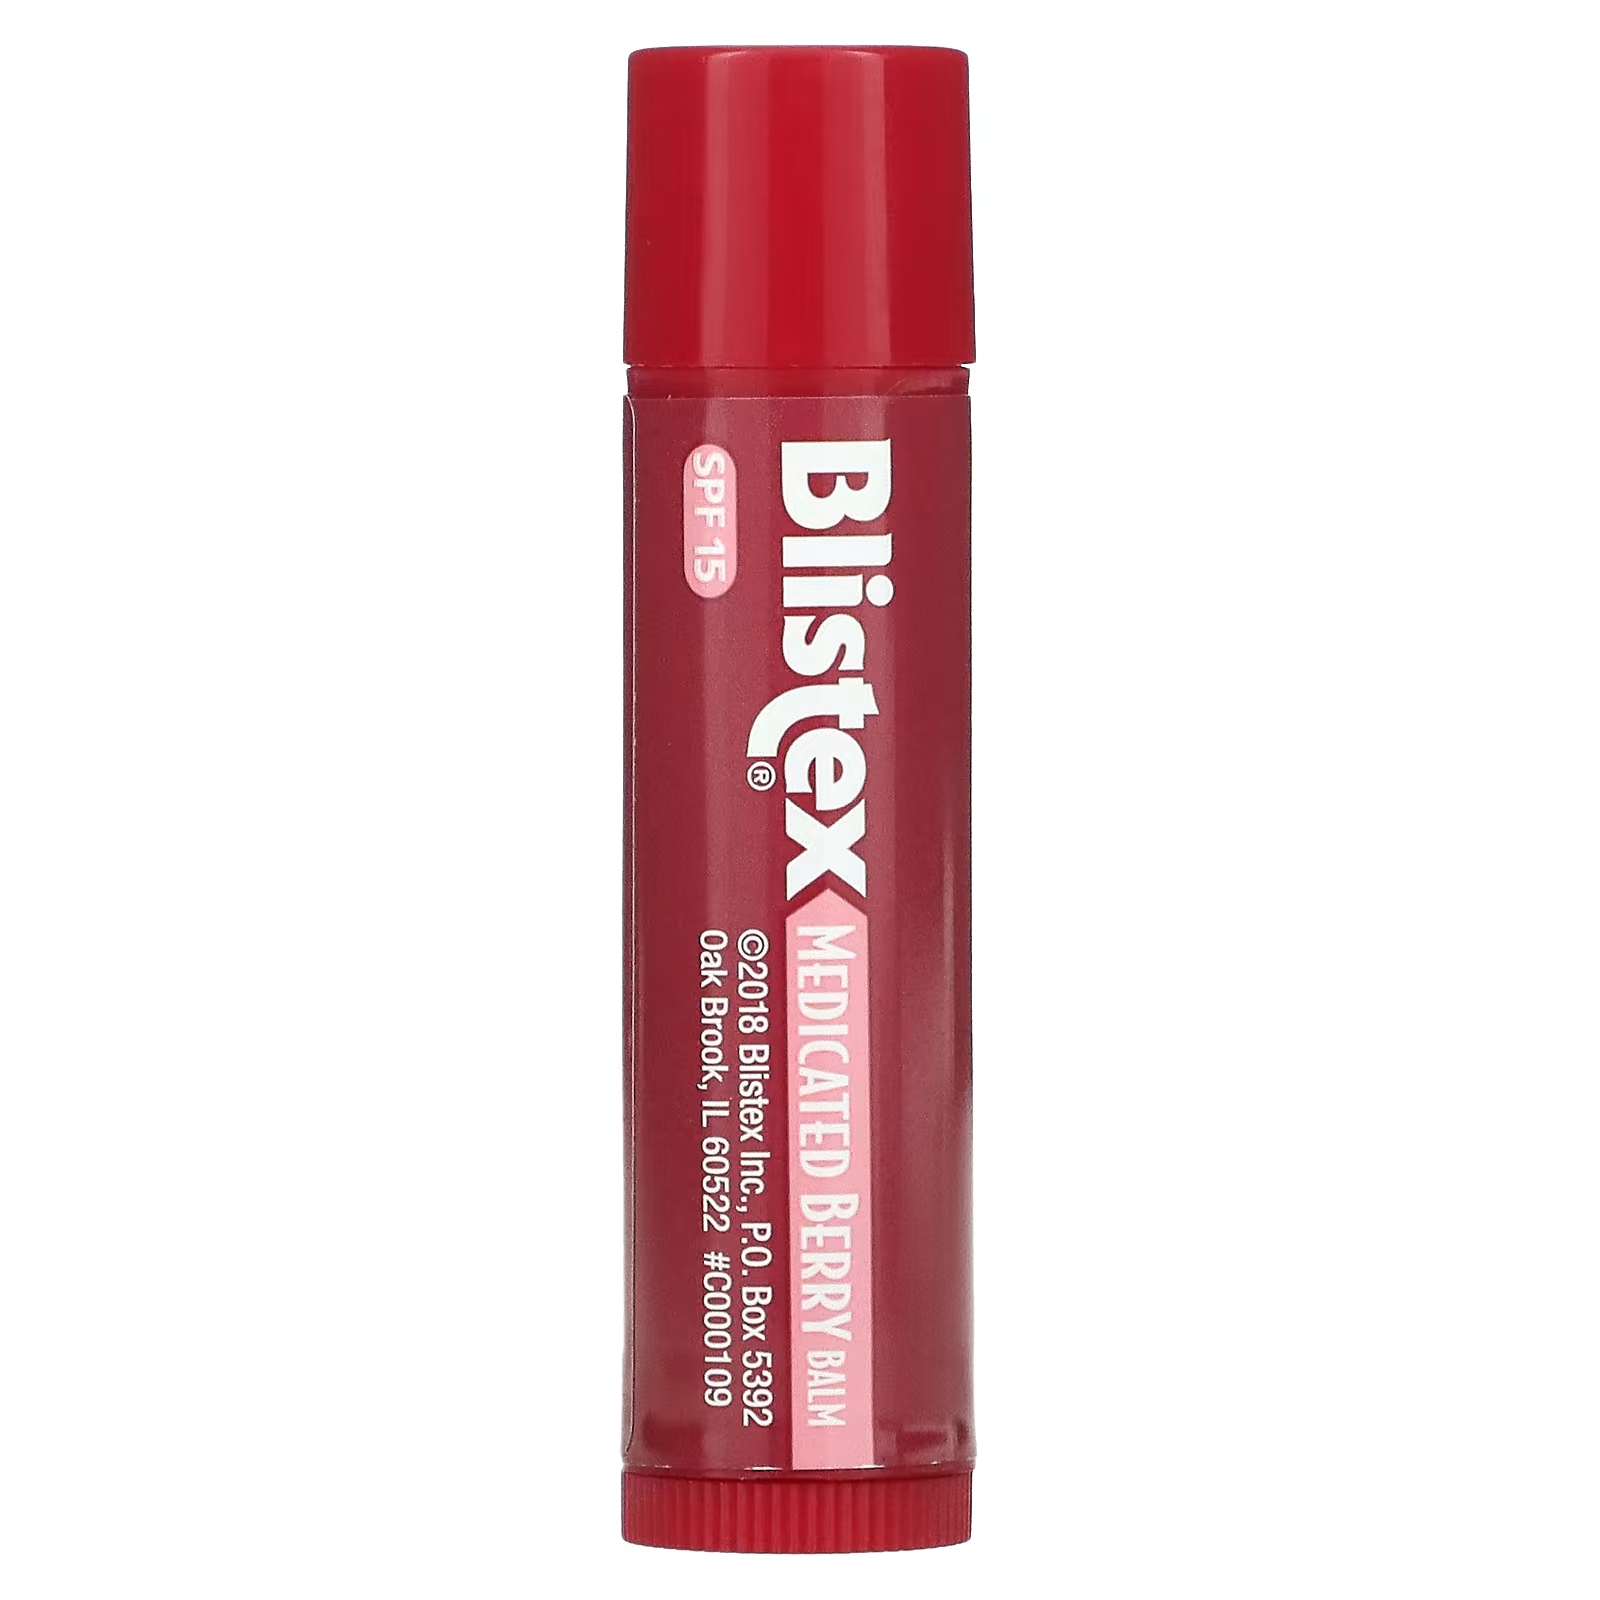 Blistex Лекарственное средство для защиты губ/солнцезащитное средство SPF 15 Berry, 0,15 унции (4,25 г) softlips солнцезащитное средство для губ spf 20 арбуз 2 пакетика по 2 г 0 07 унции